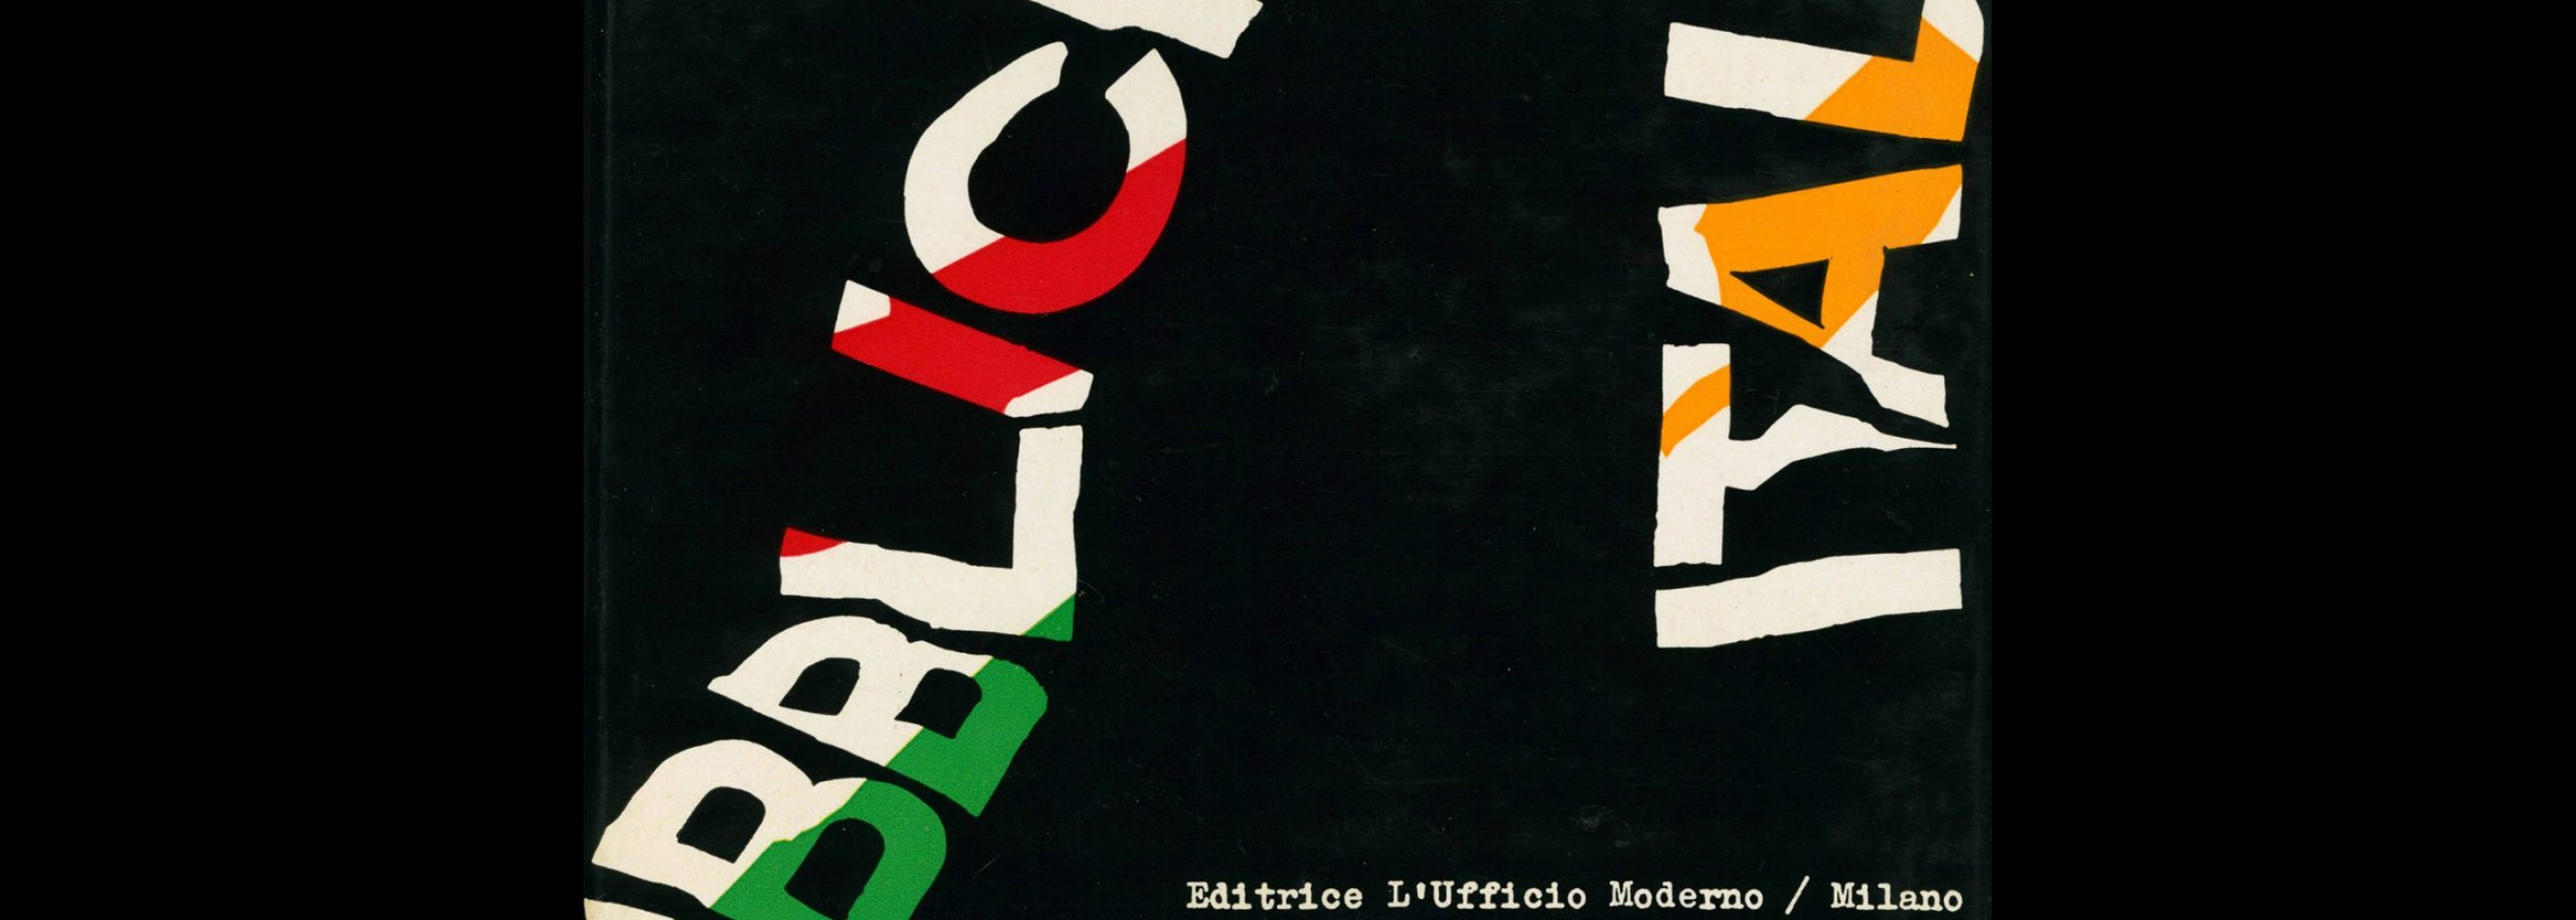 Pubblicità in Italia 1957-58. Cover design by Franco Grignani